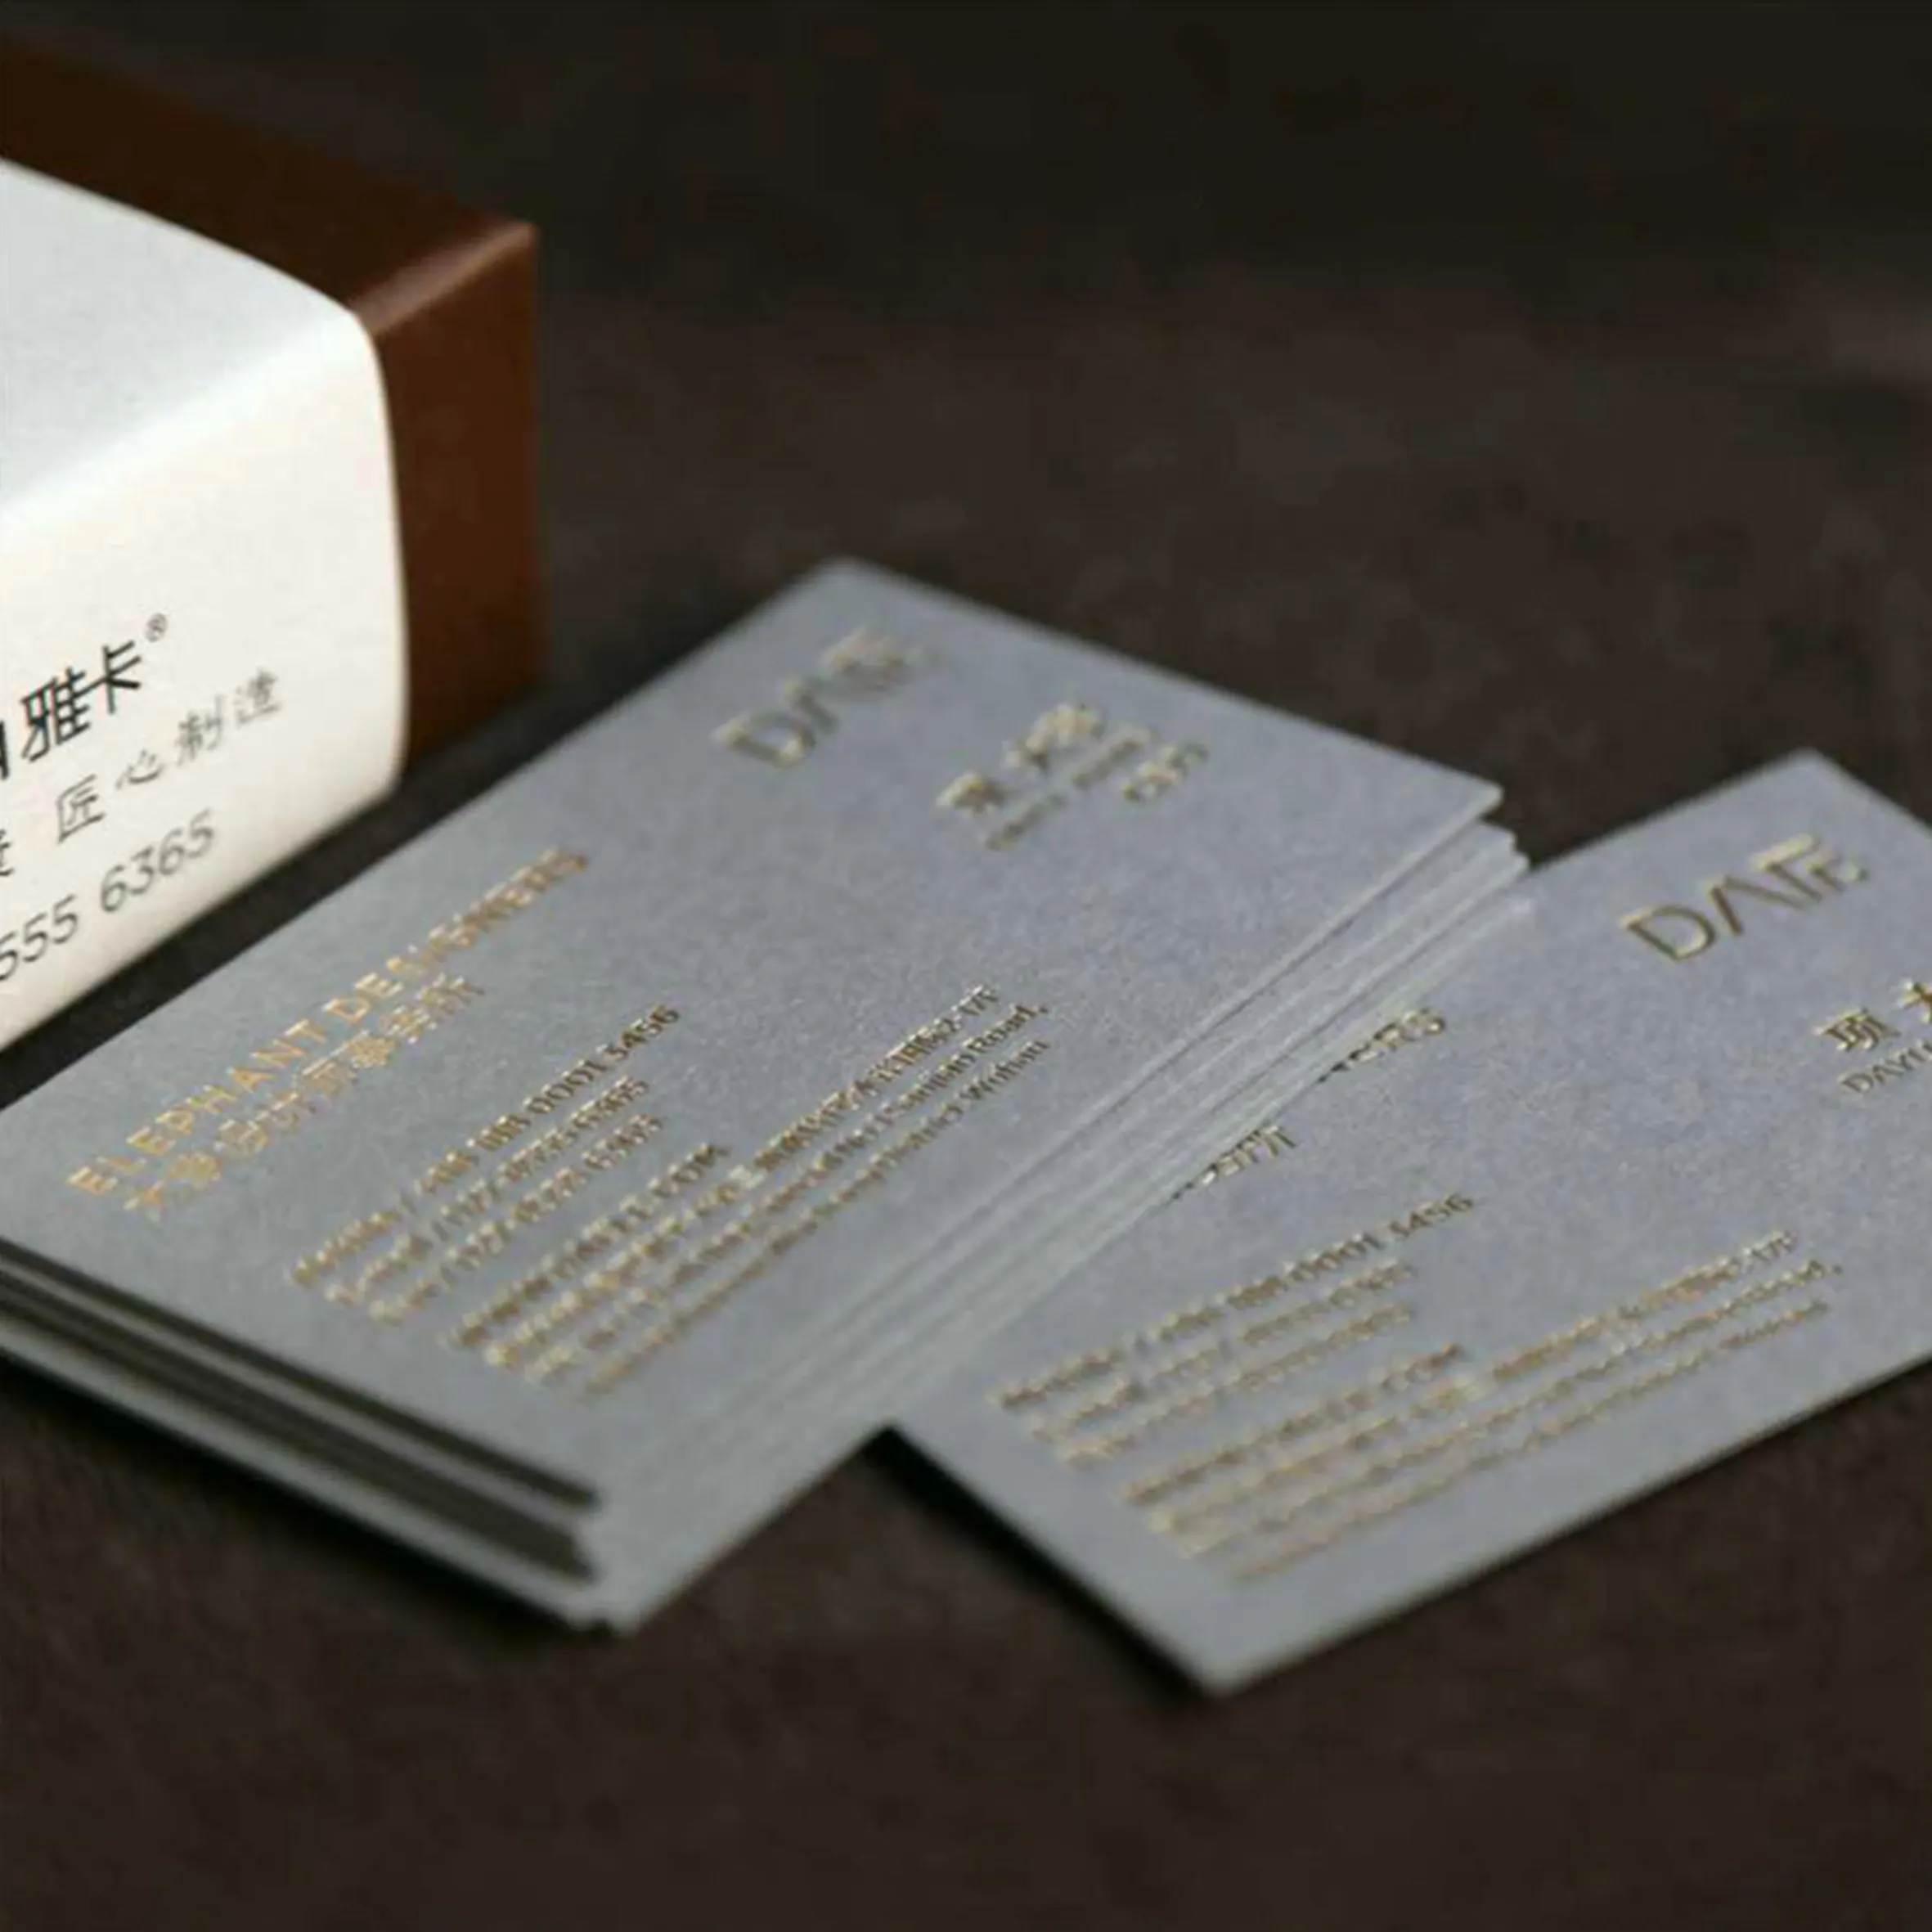 Faible quantité minimale de commande haute qualité luxe personnalisé feuille Logo en relief carte de visite carte postale carte de mariage carte de remerciement